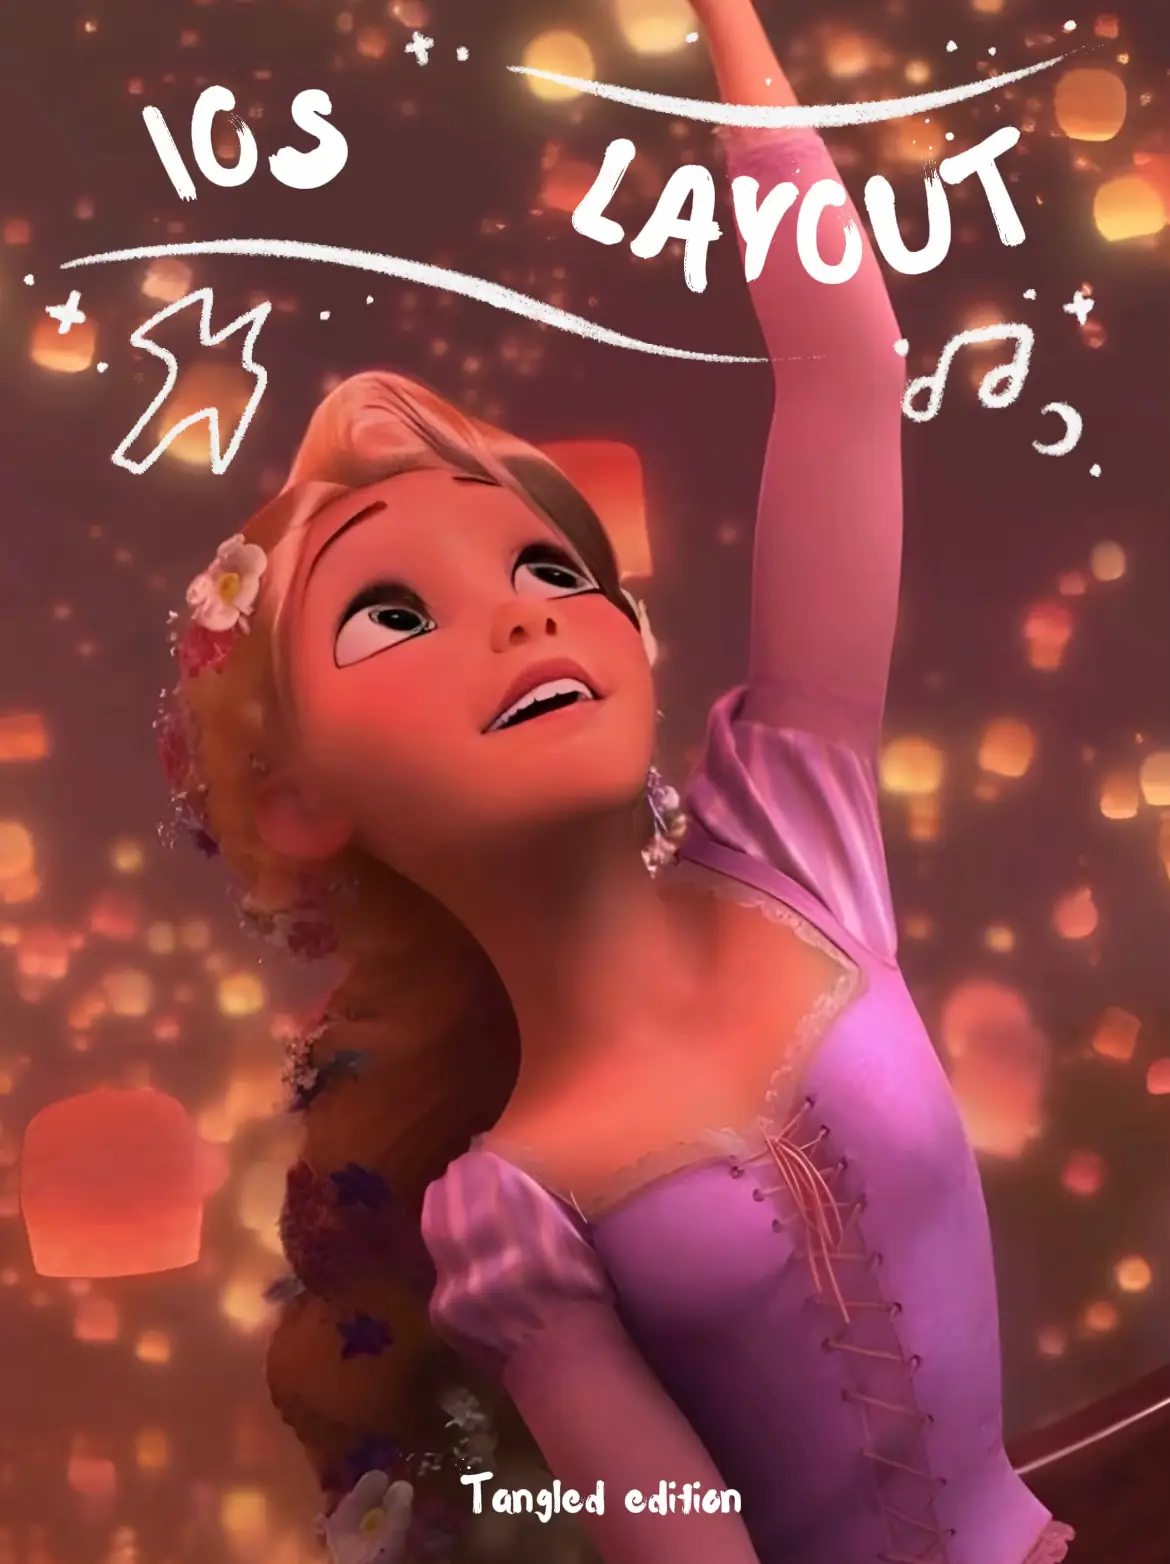 Download free Disney Princesses Tumblr Aesthetic Wallpaper